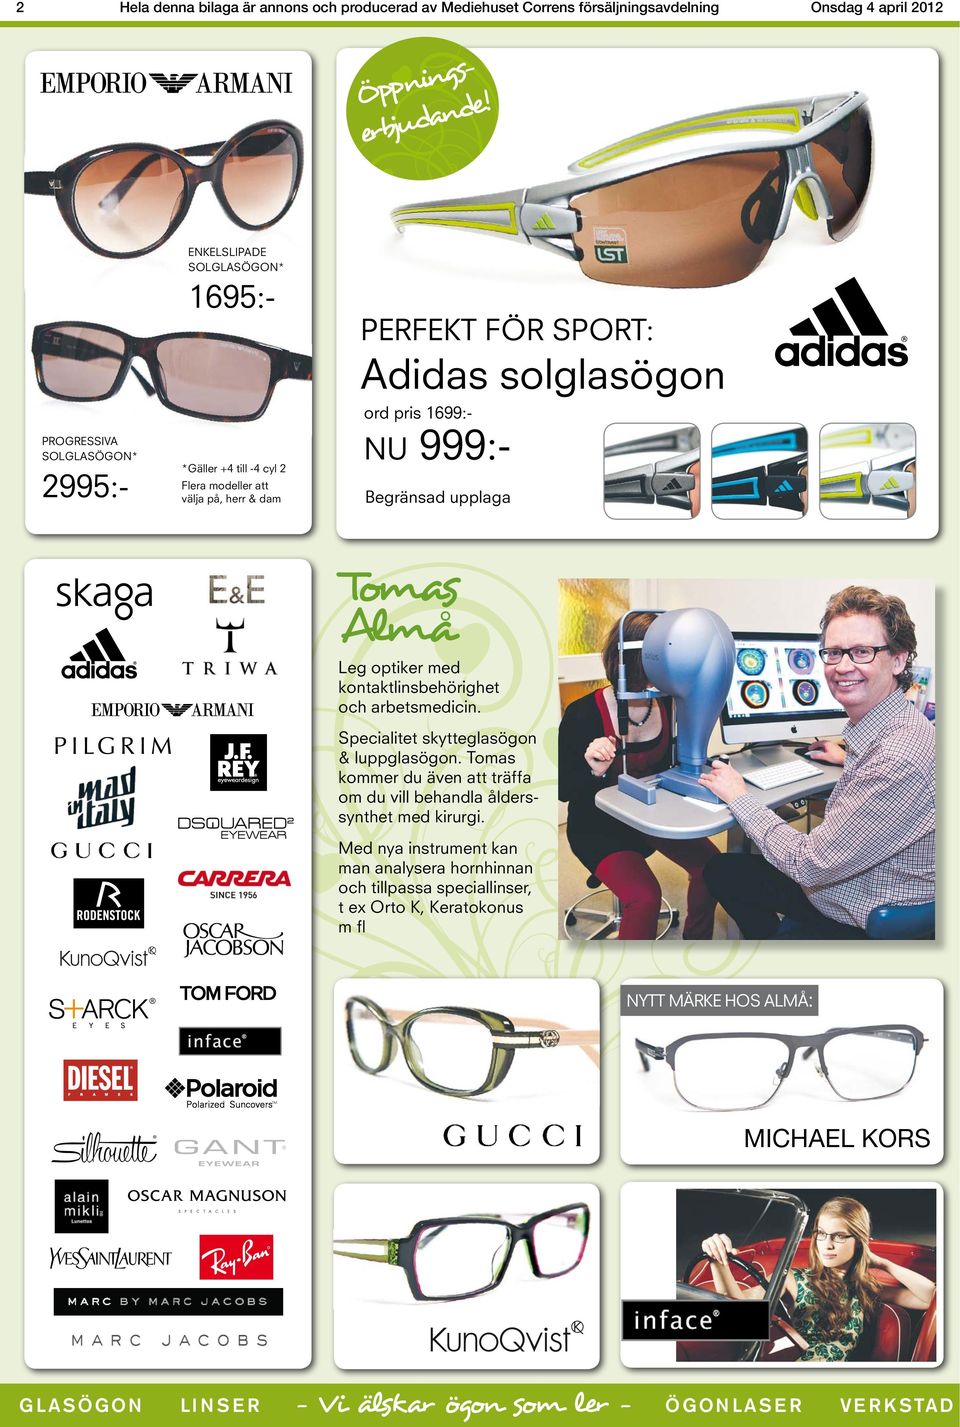 ord pris 1699:- NU 999:- Begränsad upplaga Tomas Almå Leg optiker med kontaktlinsbehörighet och arbetsmedicin. Specialitet skytteglasögon & luppglasögon.